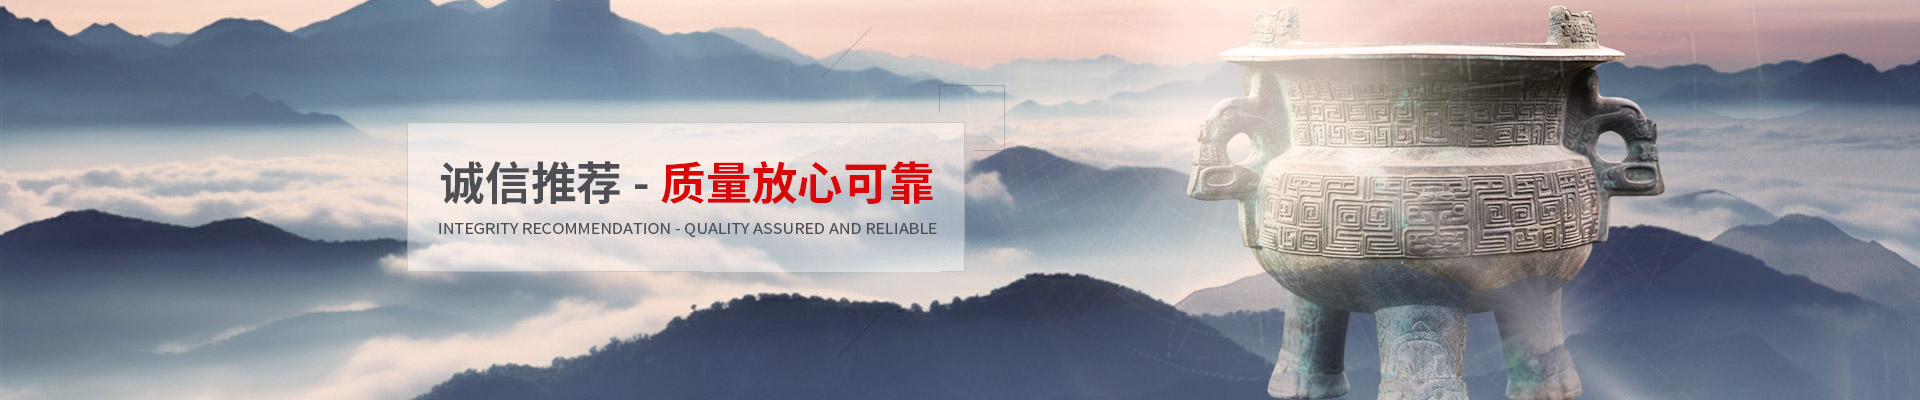 上海北嘉数码影像科技股份有限公司公司介绍